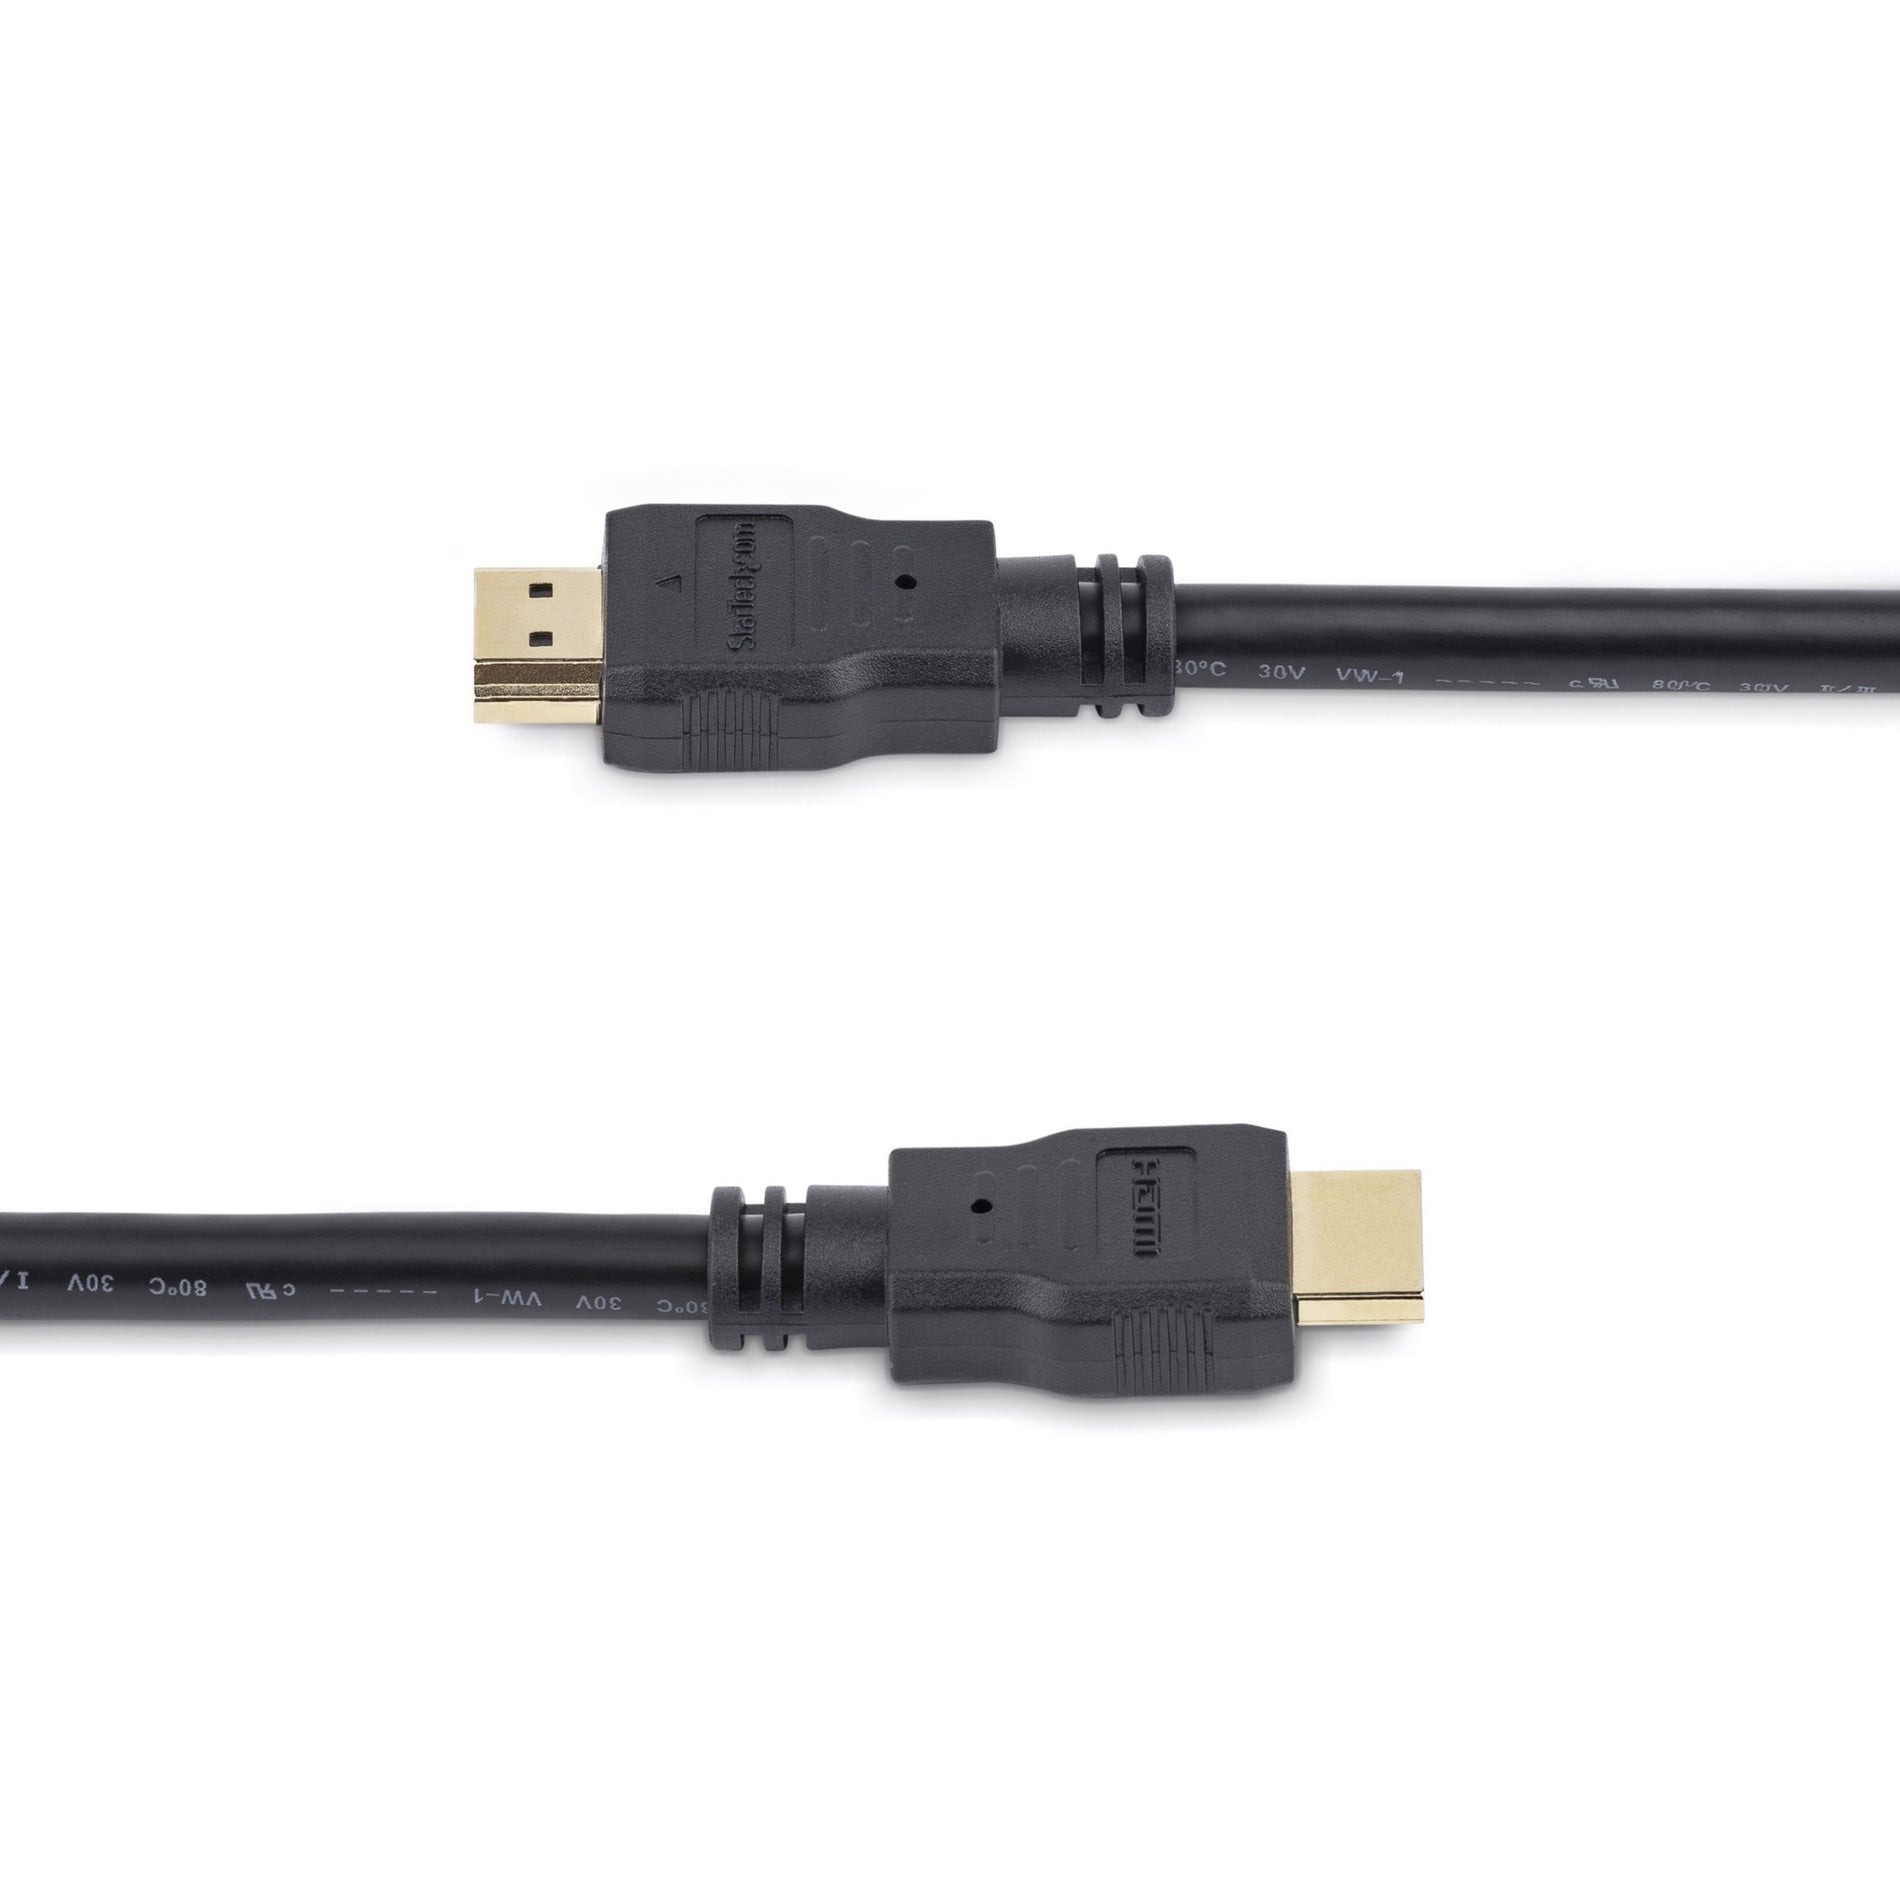 كابل HDMI عالي السرعة StarTech.com HDMM1M - كابل HDMI Ultra HD 4k x 2k ، مصبوب ، مقاوم للتآكل ، مقاوم للانحناء ، موصل نحاسي ، معزول ، 3.28 قدم ، موصلات مطلية بالذهب ، 28 AWG ، دقة مدعومة 3840 x 2160 ، أسود ستارتيك ستارتيك